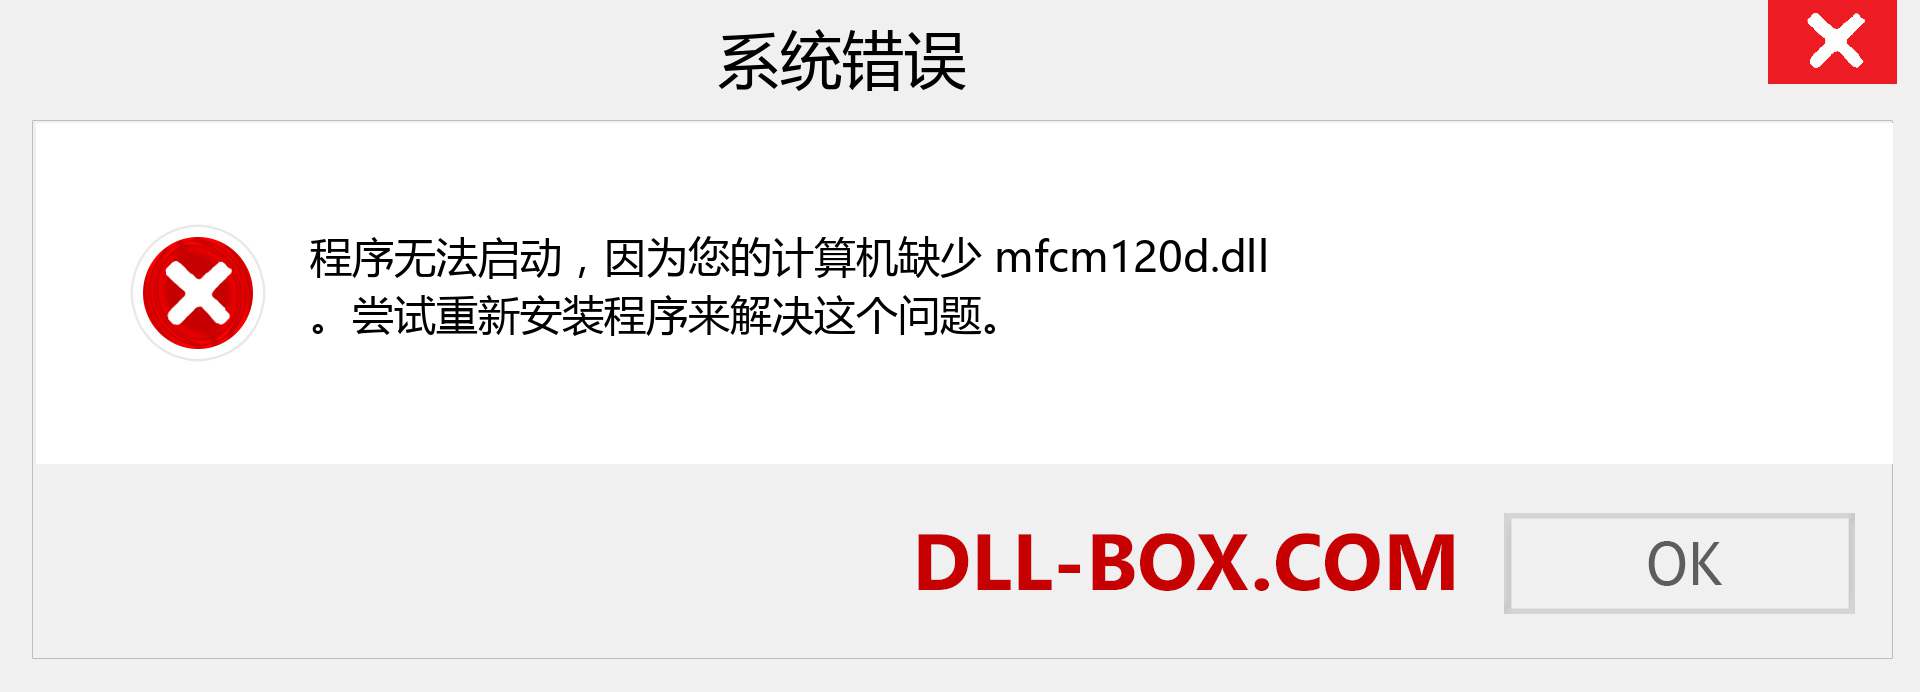 mfcm120d.dll 文件丢失？。 适用于 Windows 7、8、10 的下载 - 修复 Windows、照片、图像上的 mfcm120d dll 丢失错误